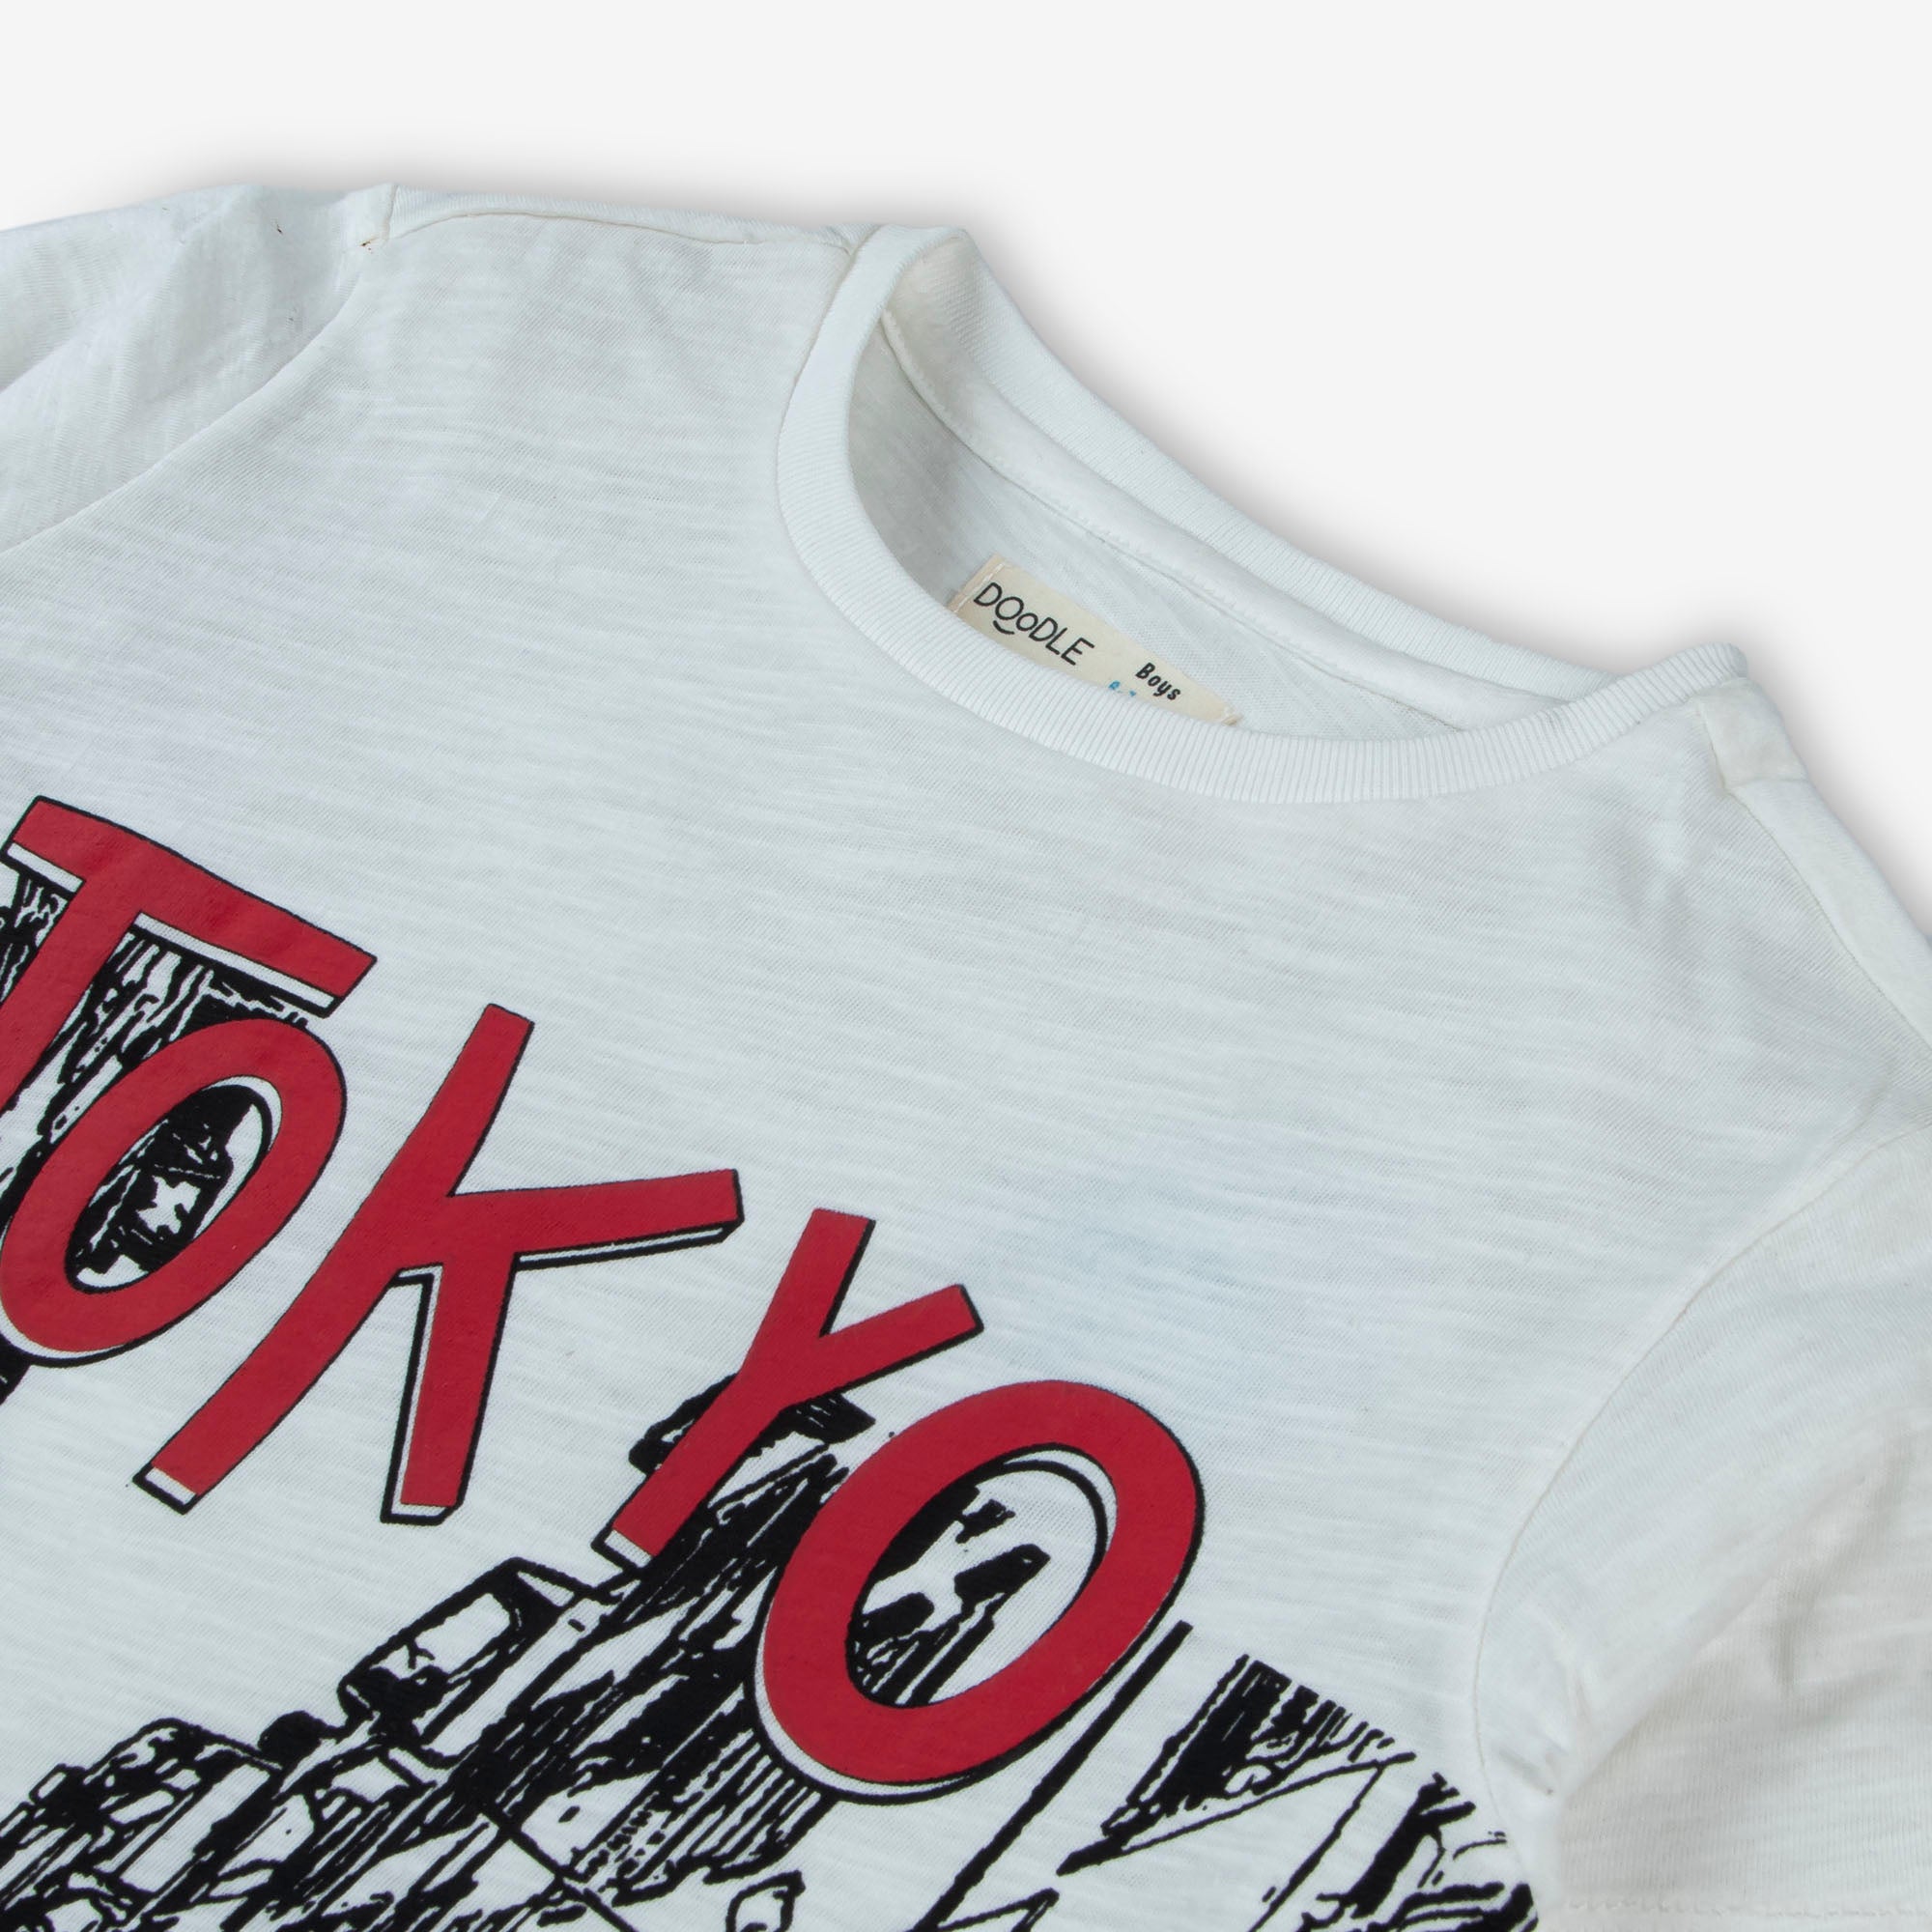 Tokyo Street T-Shirt